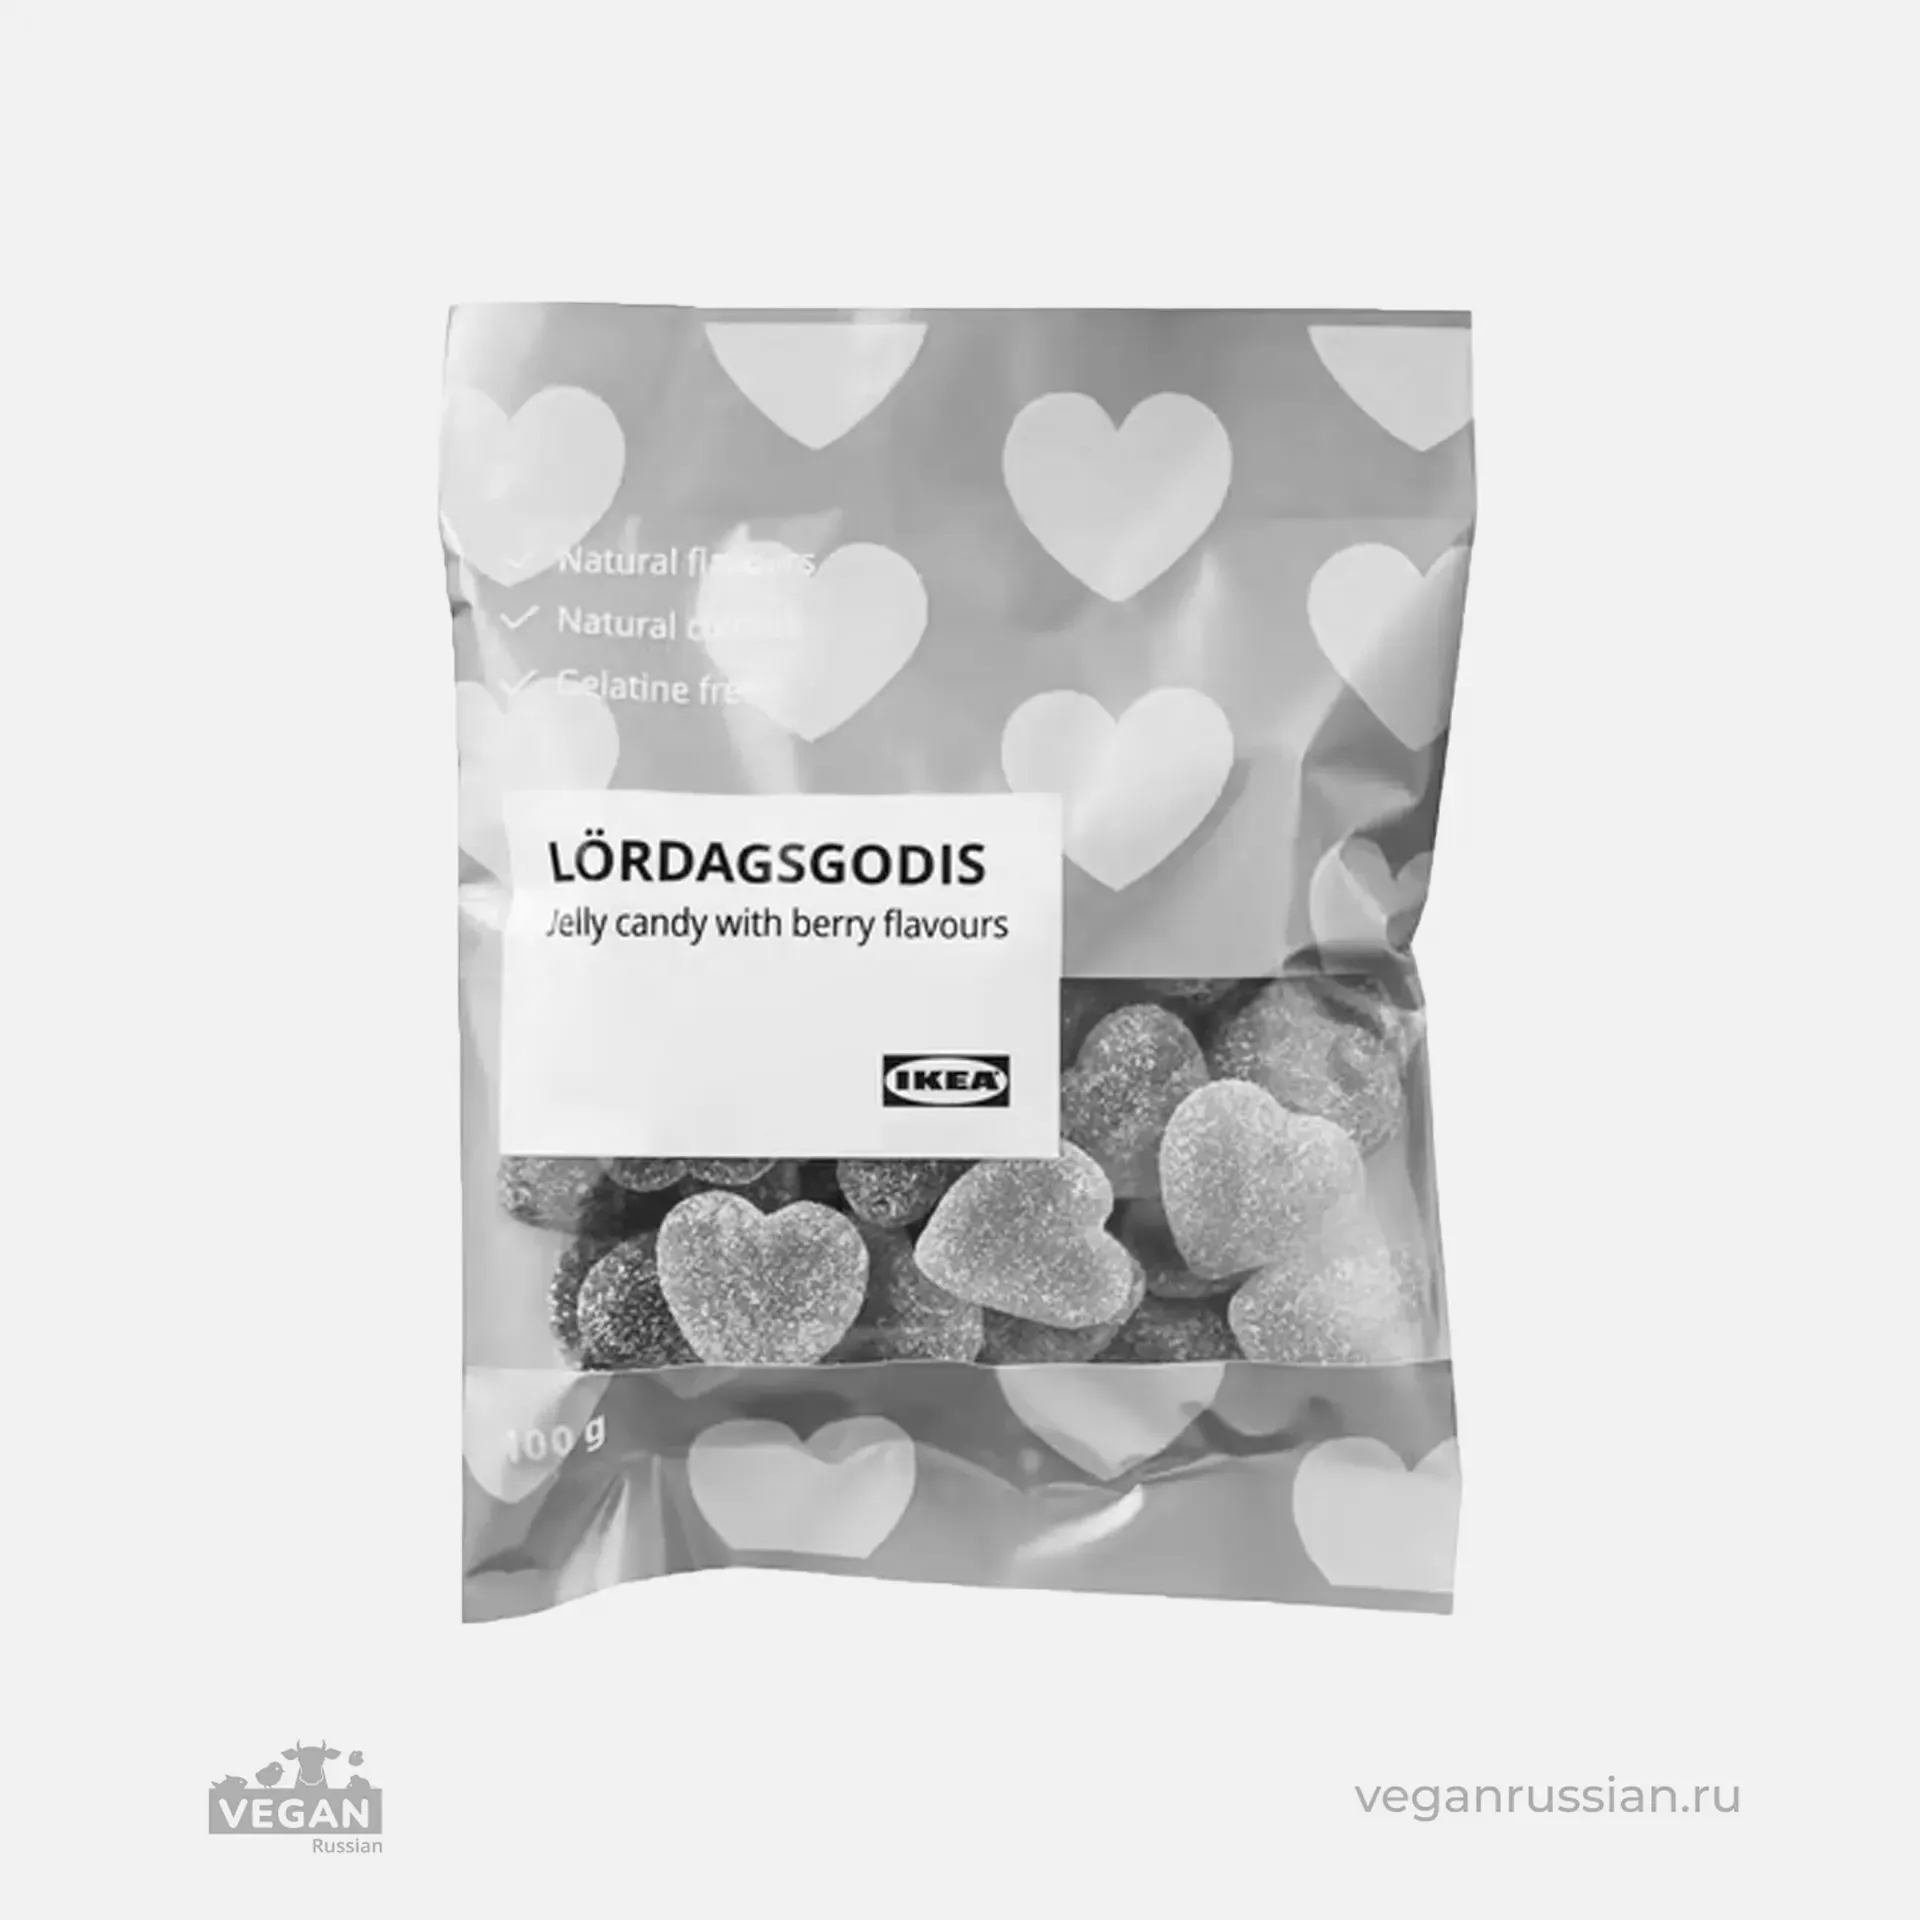 Архив: Желейные конфеты со вкусом ягод Lördagsgodis IKEA 100 г